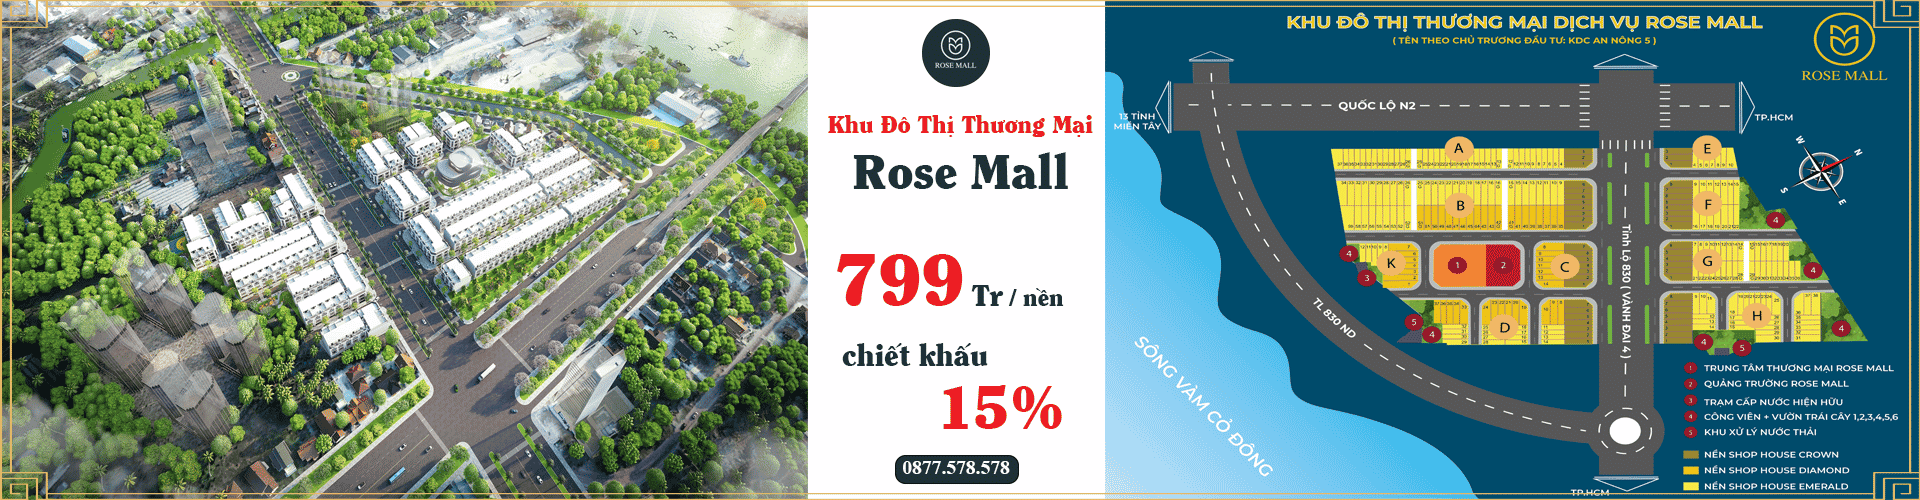 khu đô thị thương mại rose mall